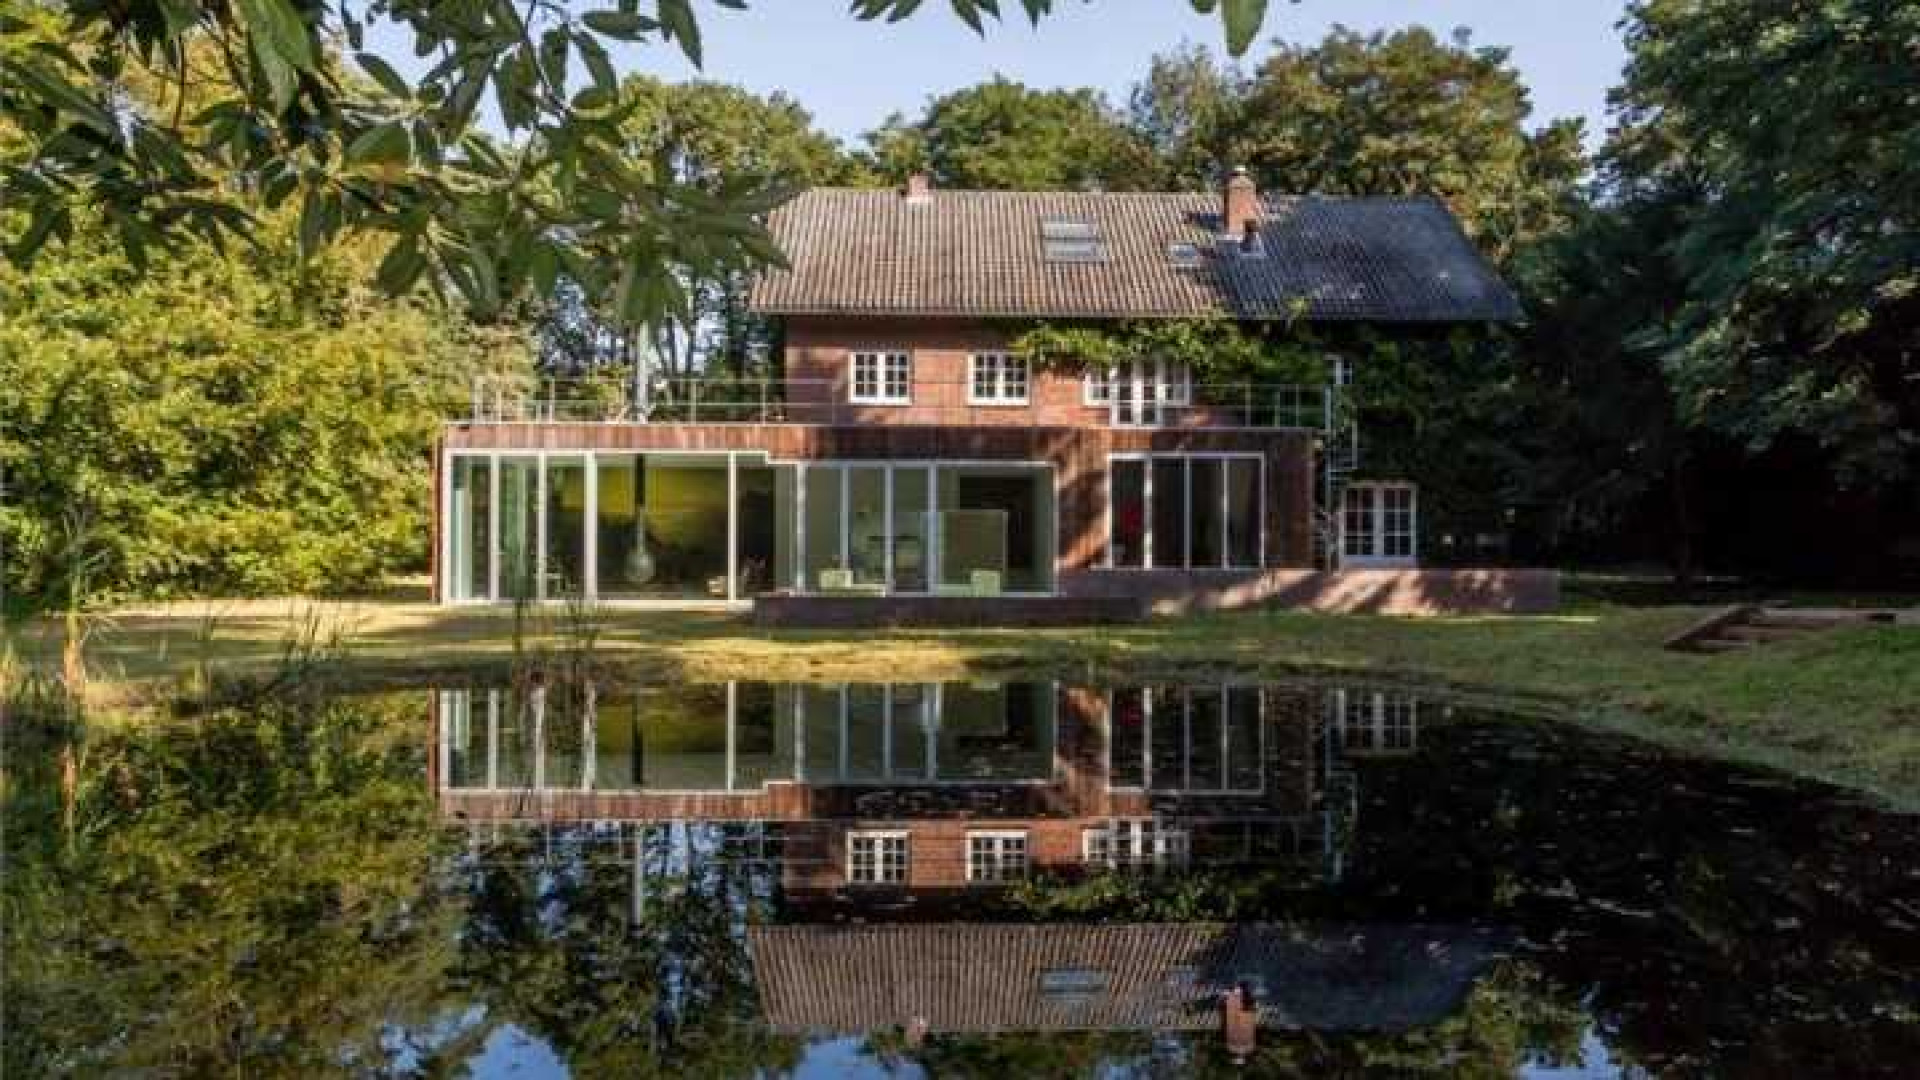 Ex vrouw Harrie Kolen legt beslag op villa en penthouse Amanda Krabbe en haar man. Zie foto's